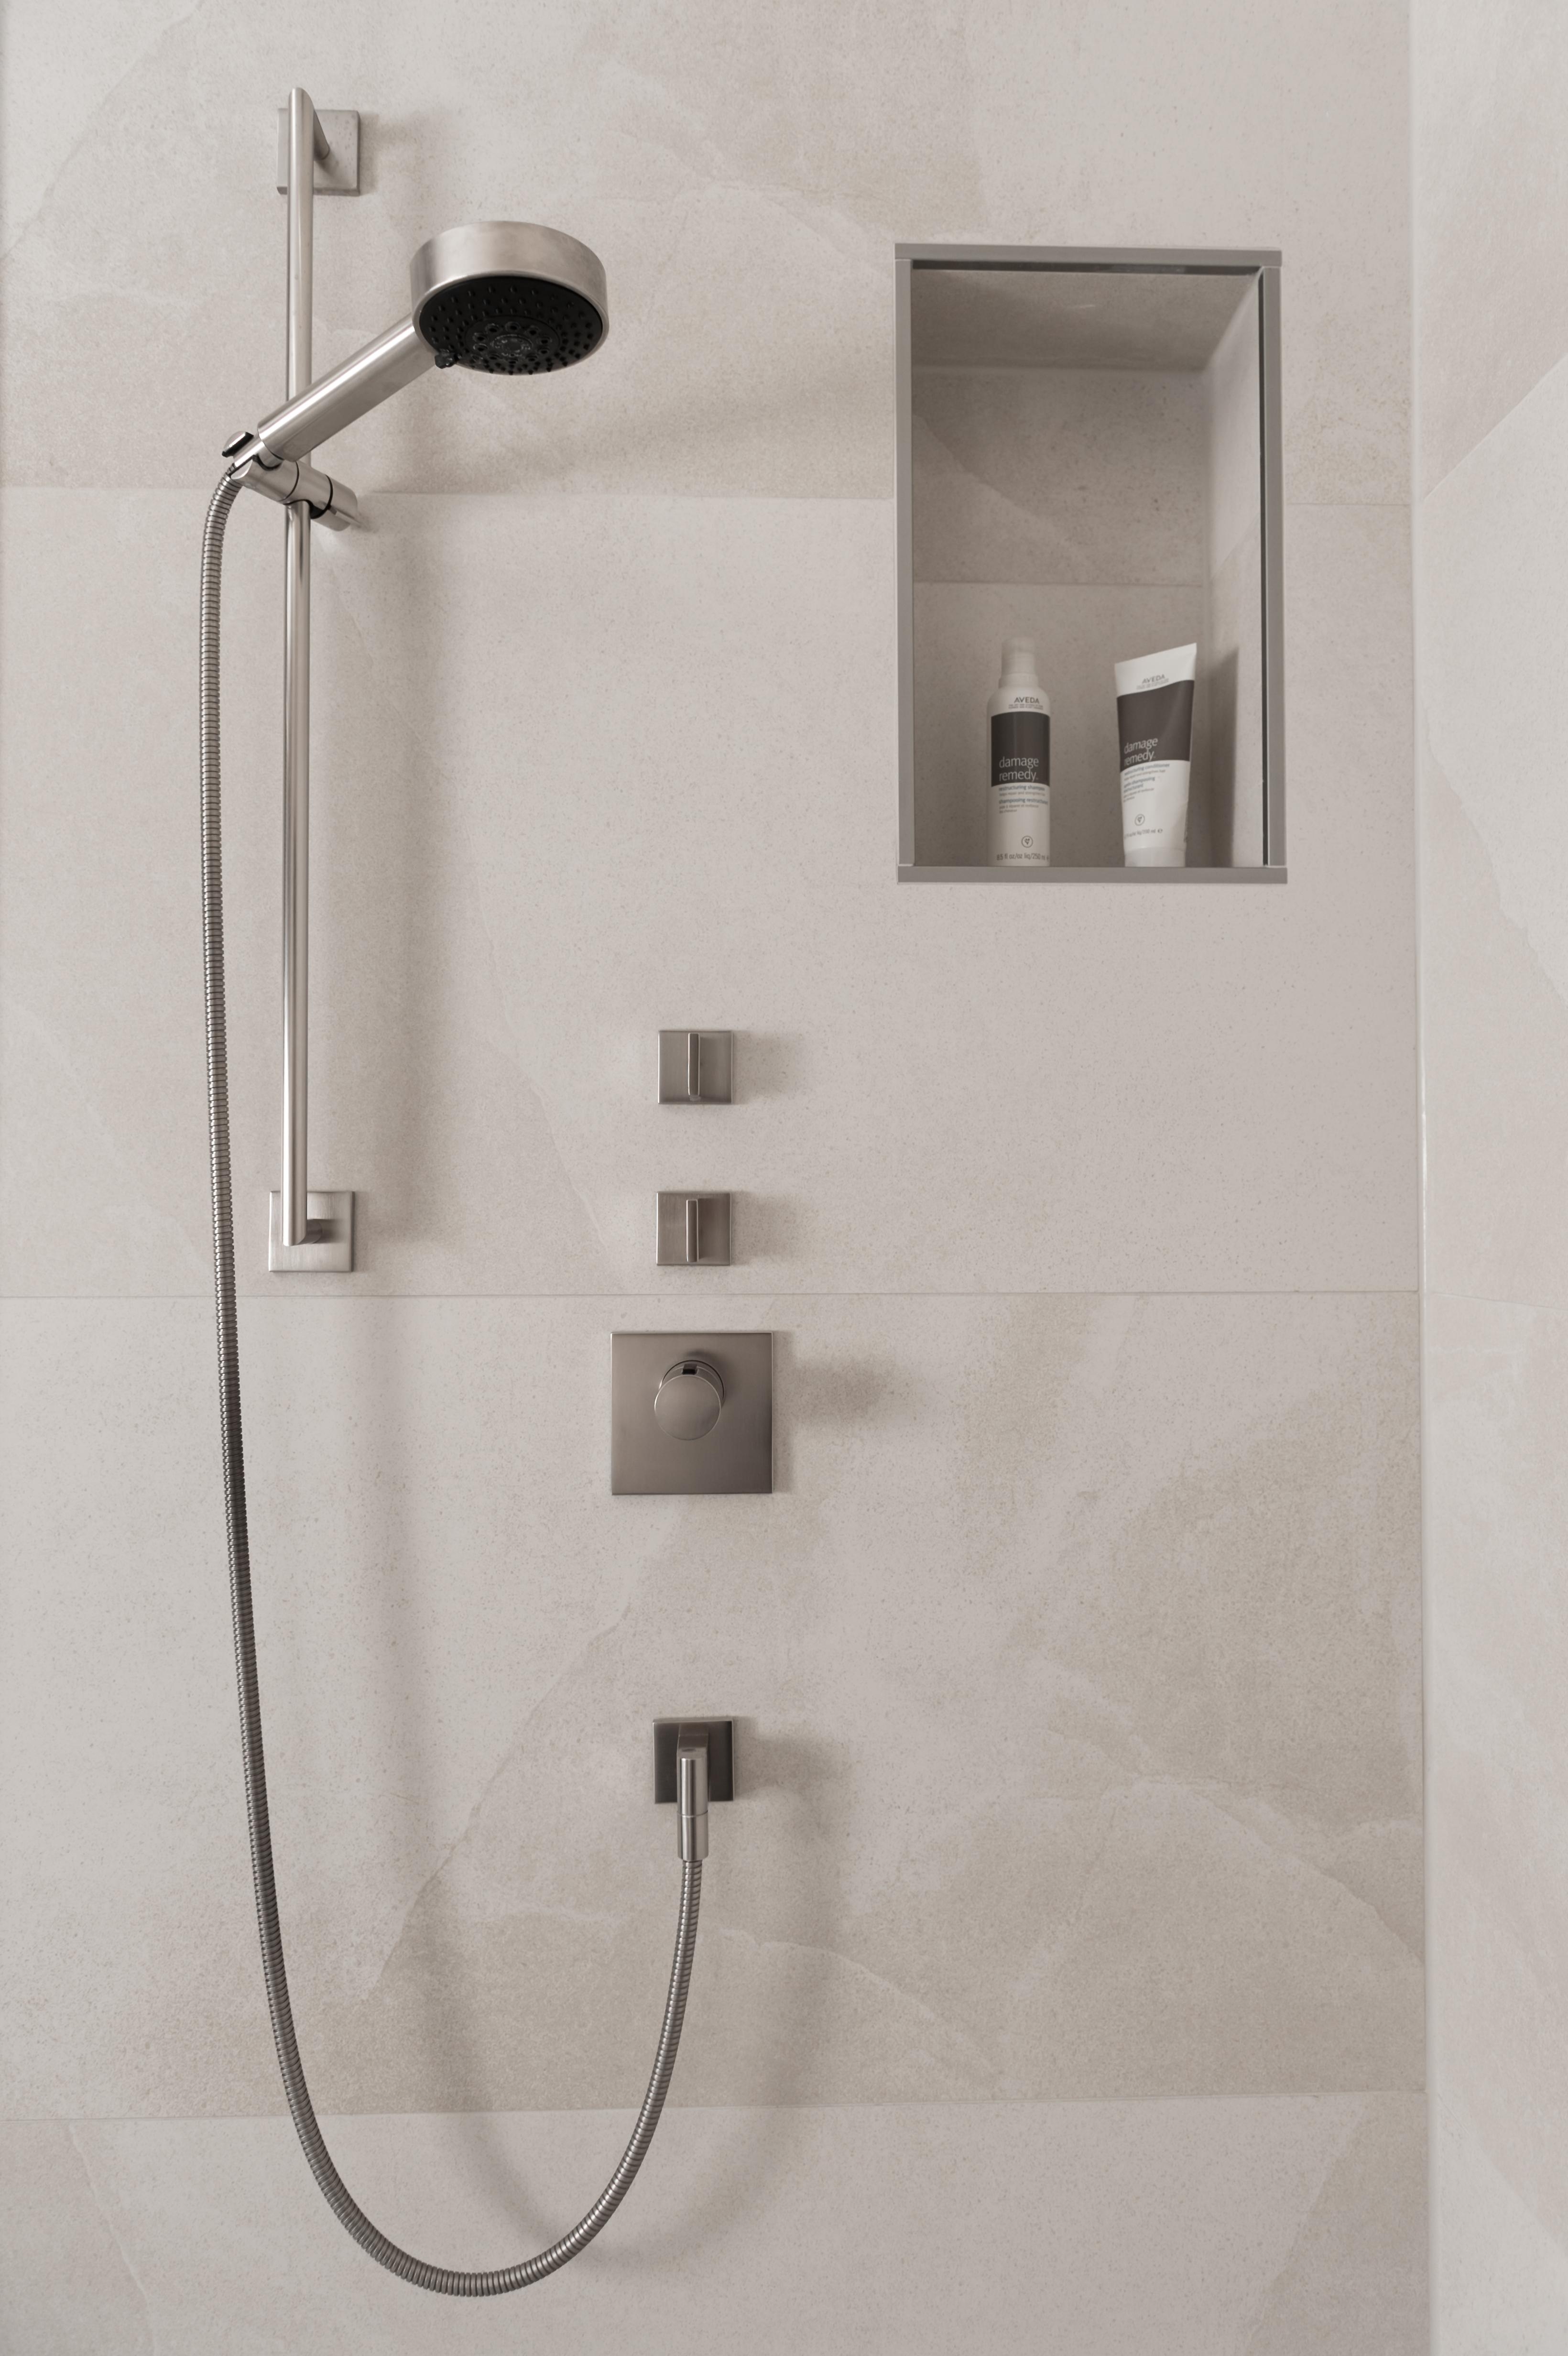 -Anzeige- #bestebadstudios #badezimmer #bad #dusche #badarmatur #modernesbadezimmer #badsanierung 